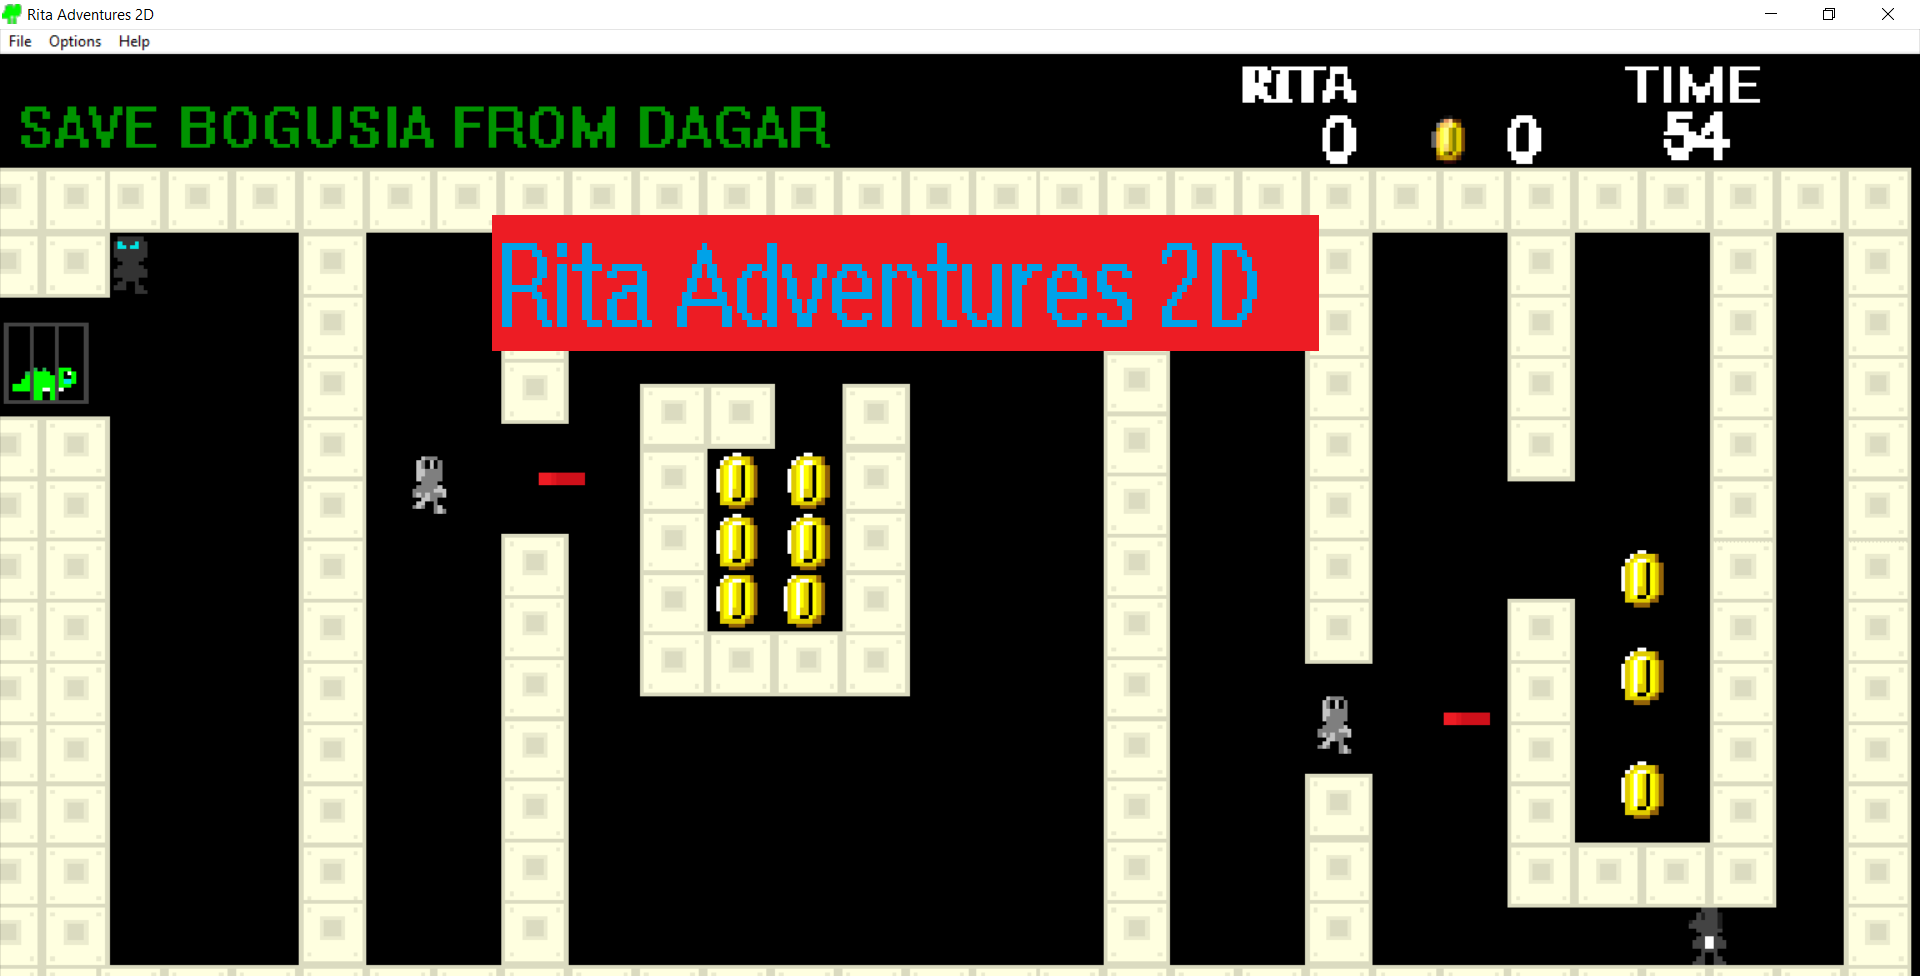 Rita Adventures 2D